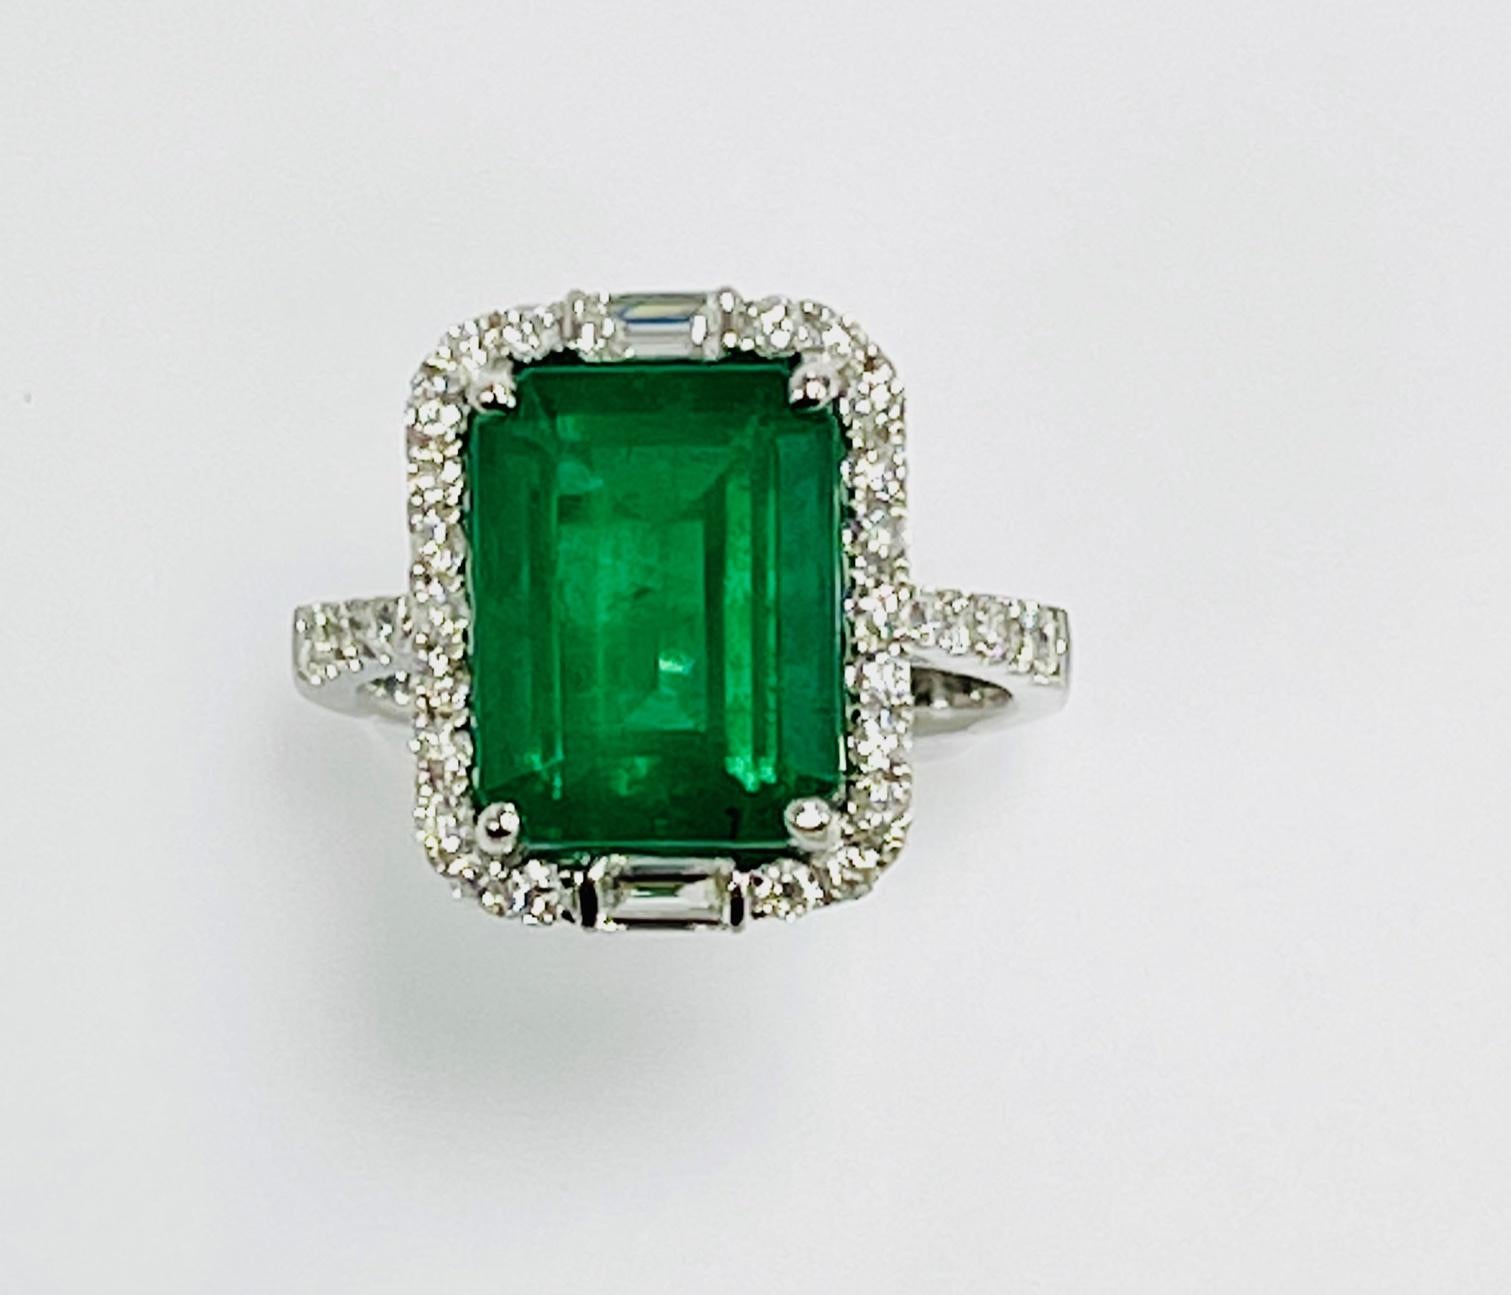 4,72 Karat sambischer Smaragdschliff Smaragd in 18k Weißgold Ring mit 0,84 Karat runden und Baguette-Diamanten um ihn herum und auf halbem Weg auf den Schaft gesetzt.